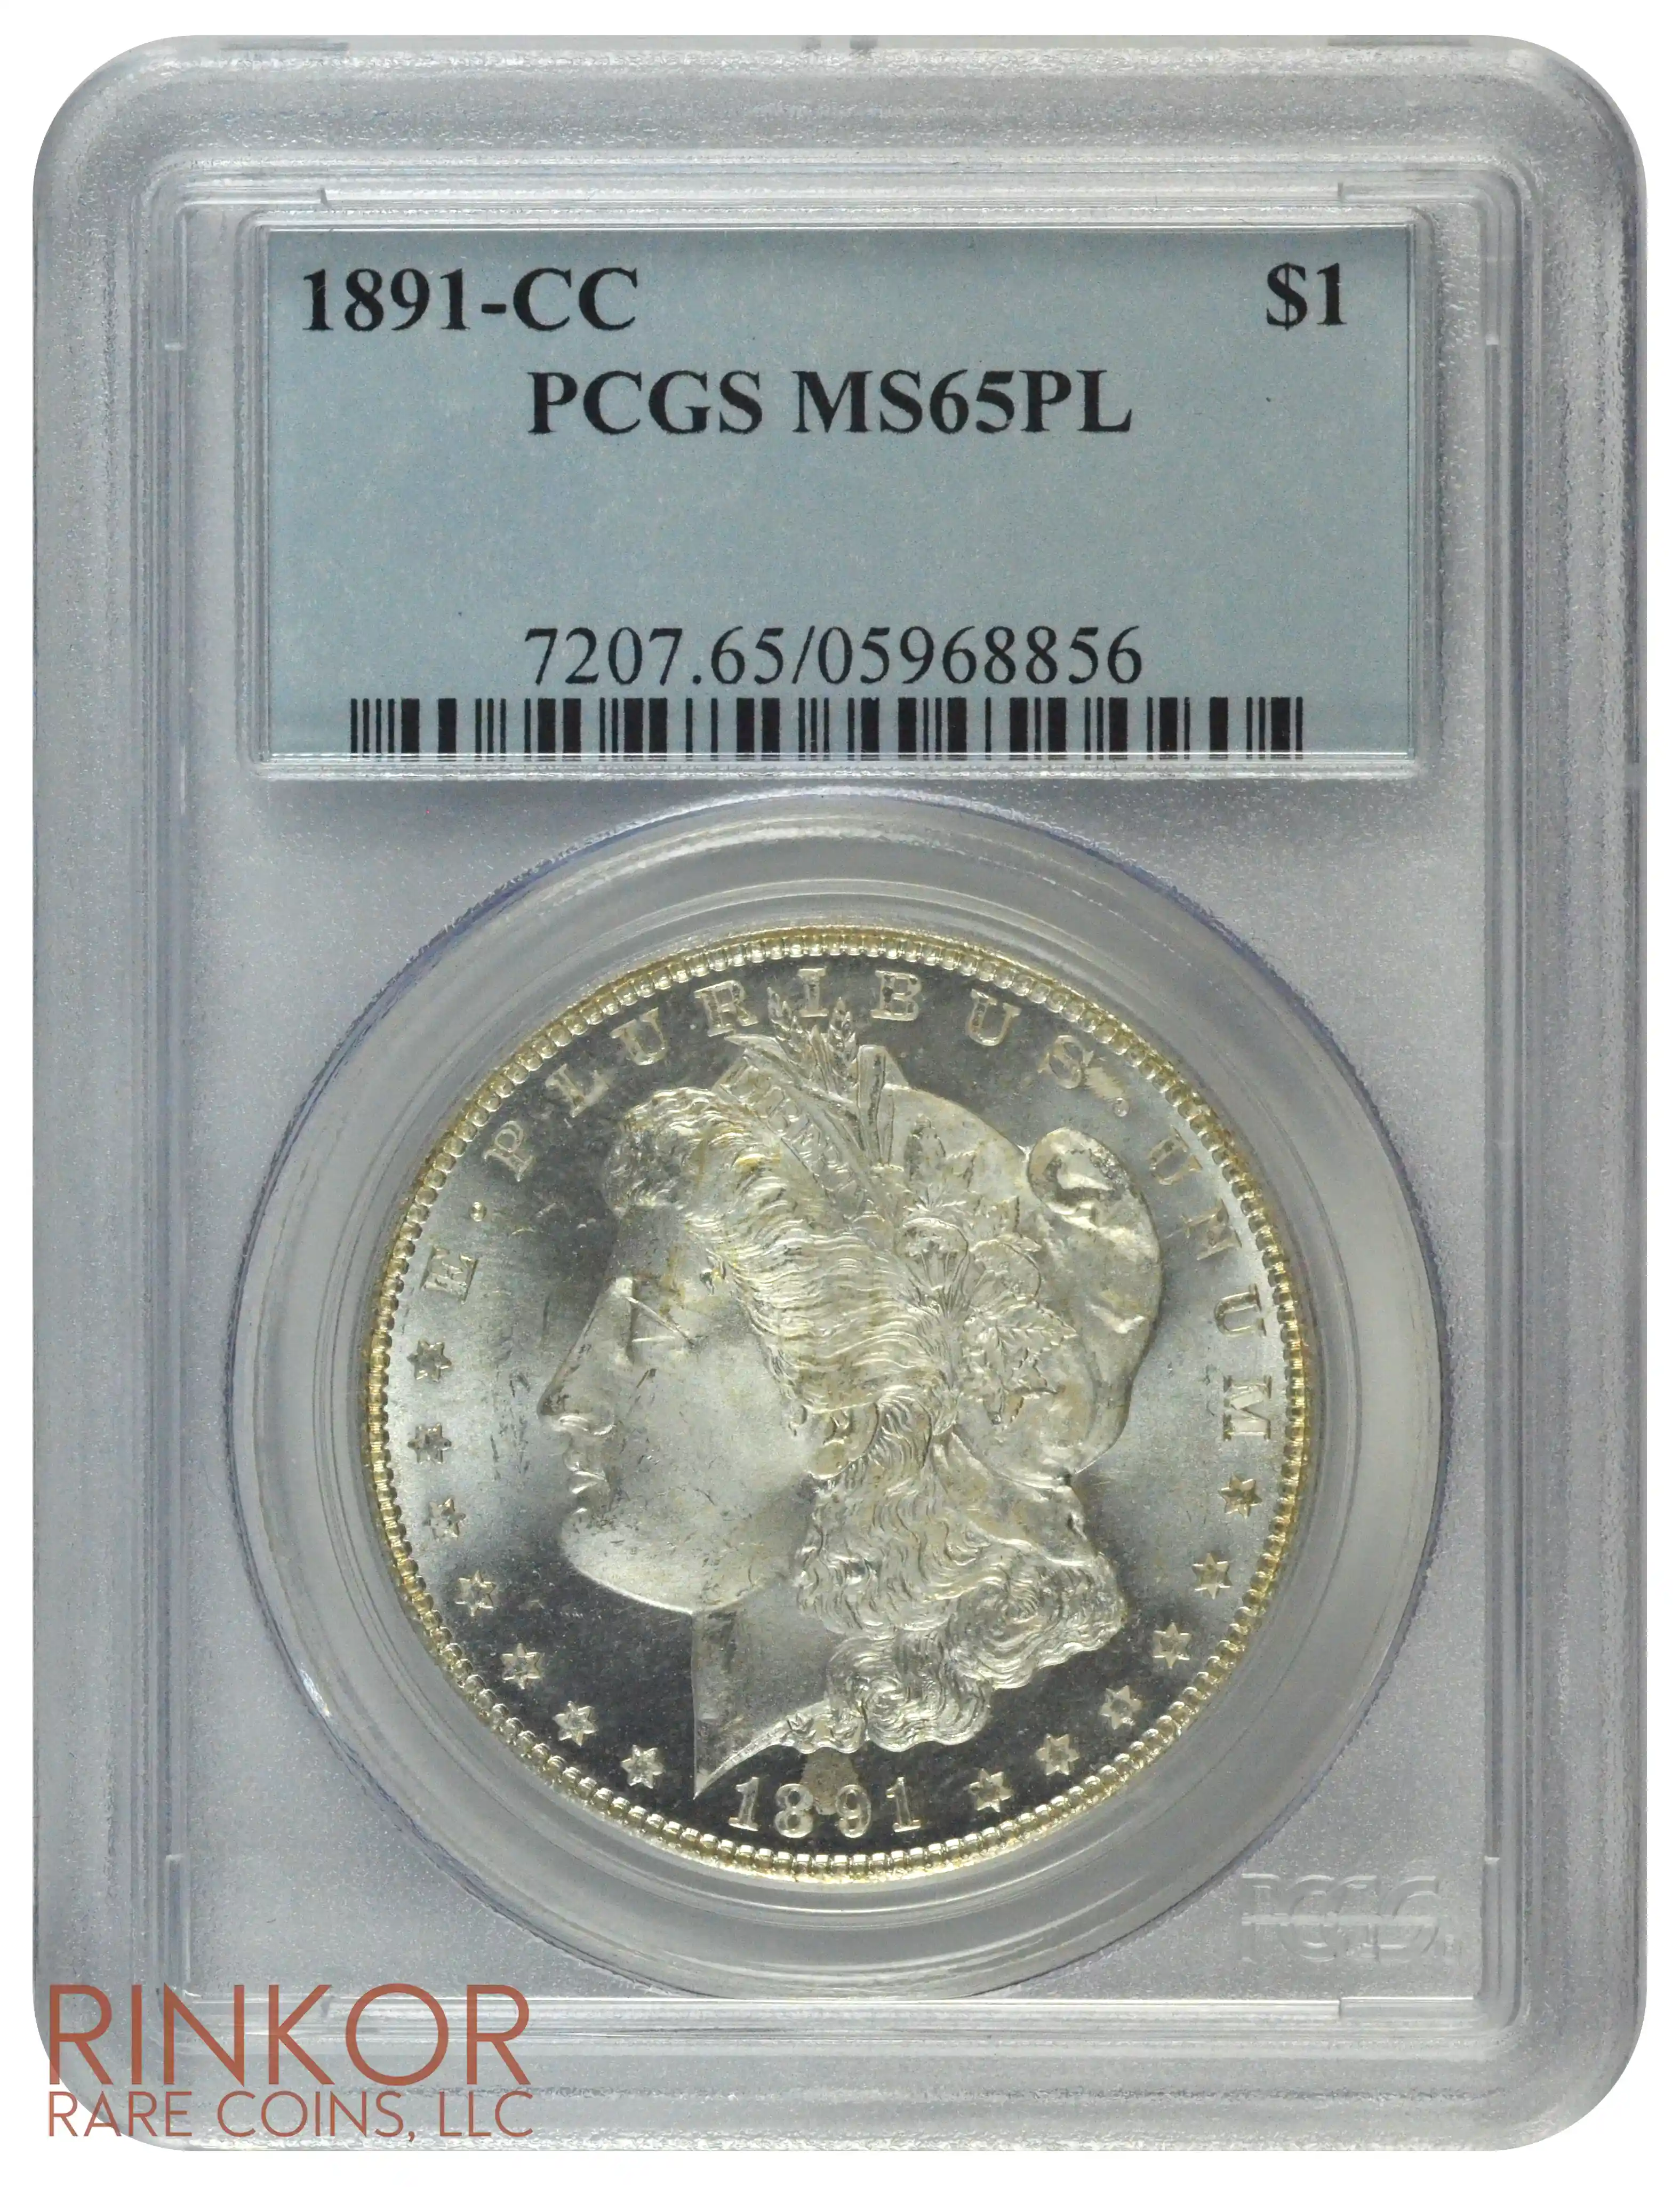 1891-CC $1 PCGS MS 65 PL